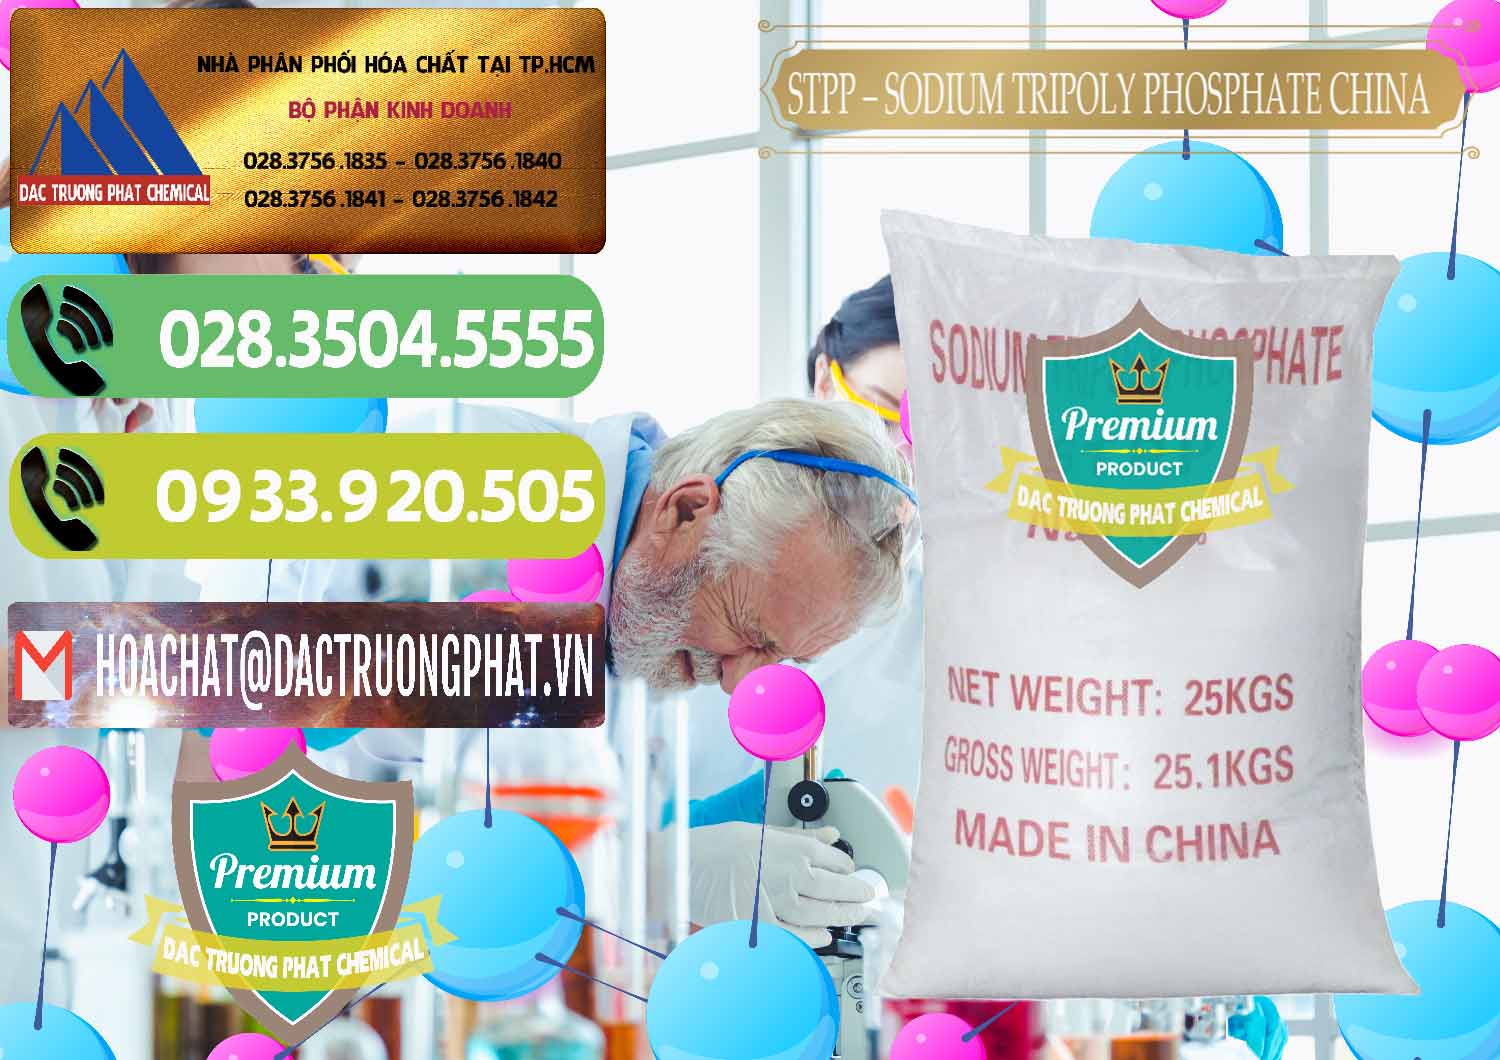 Nhà cung cấp ( bán ) Sodium Tripoly Phosphate - STPP 96% Chữ Đỏ Trung Quốc China - 0155 - Cty bán ( cung cấp ) hóa chất tại TP.HCM - hoachatmientay.vn